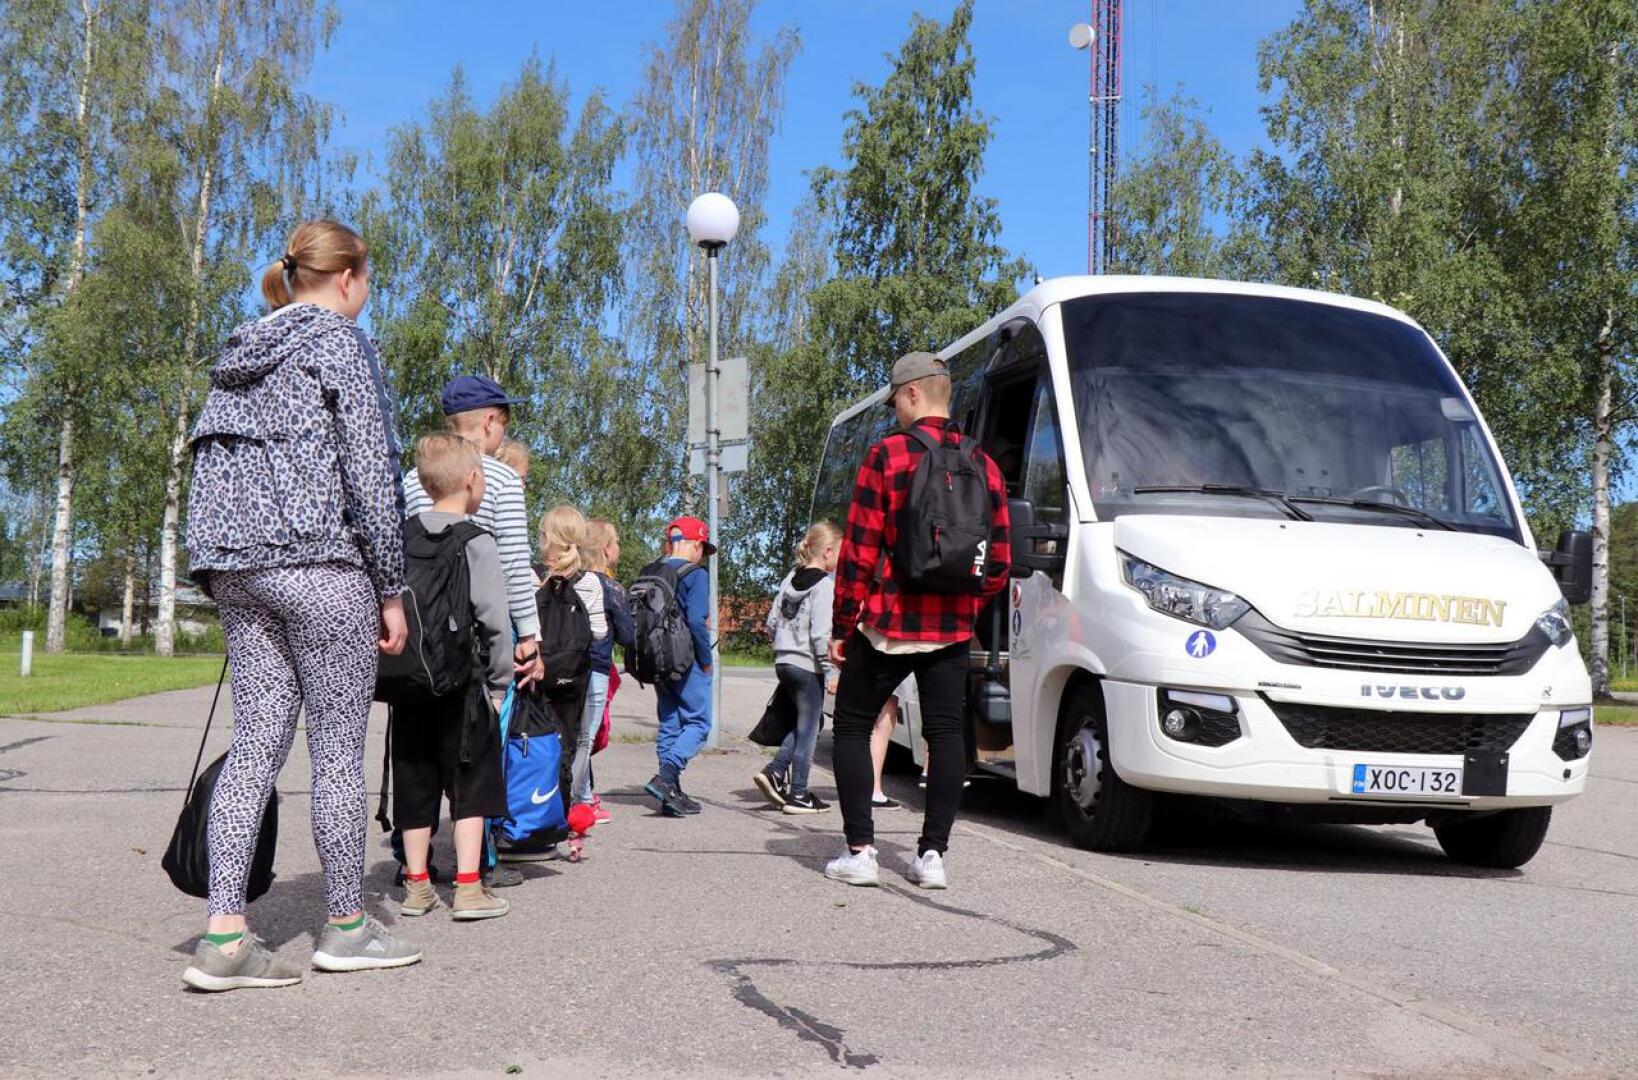 Perhon kunnan koulukyydeistä on huolehtinut pitkään muun muassa Linja-autoliikenne Salminen Ky. Salmisen pikkubussi on kuskannut tällä viikolla perholaislapsia uimakouluun Veteliin.